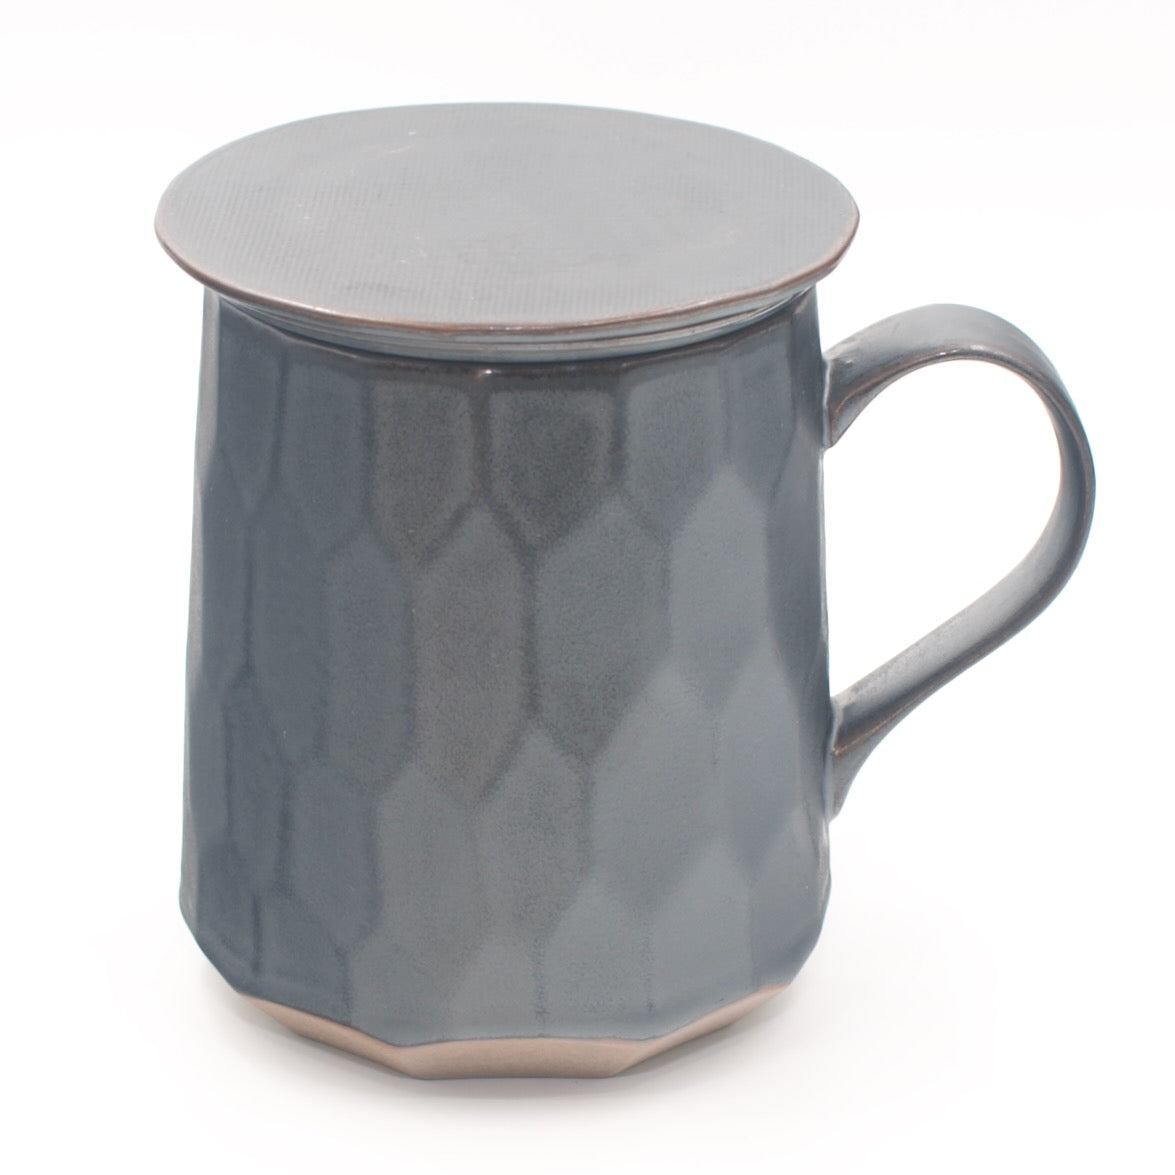 Patterned Tea Mug with Infuser-3